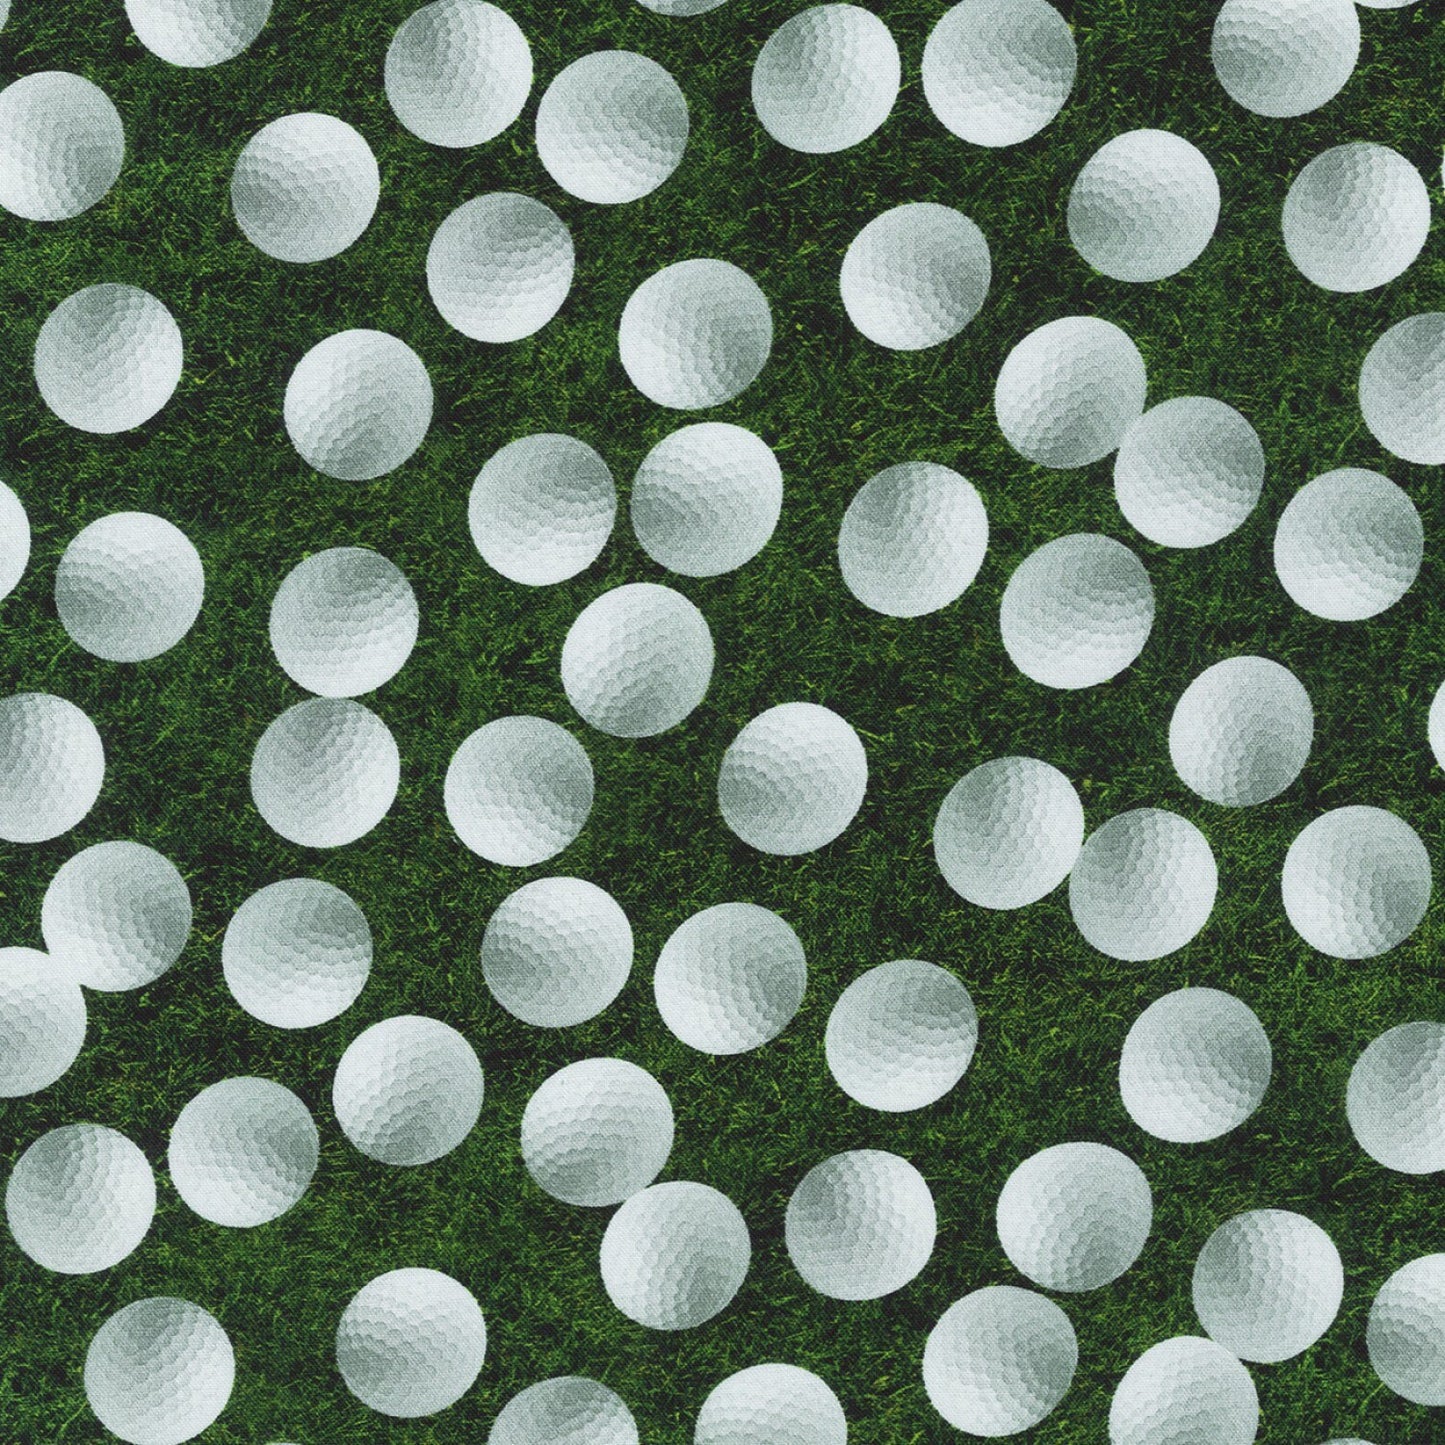 Robert Kaufman - Sports Life - Golf Balls on Grass (Digital)